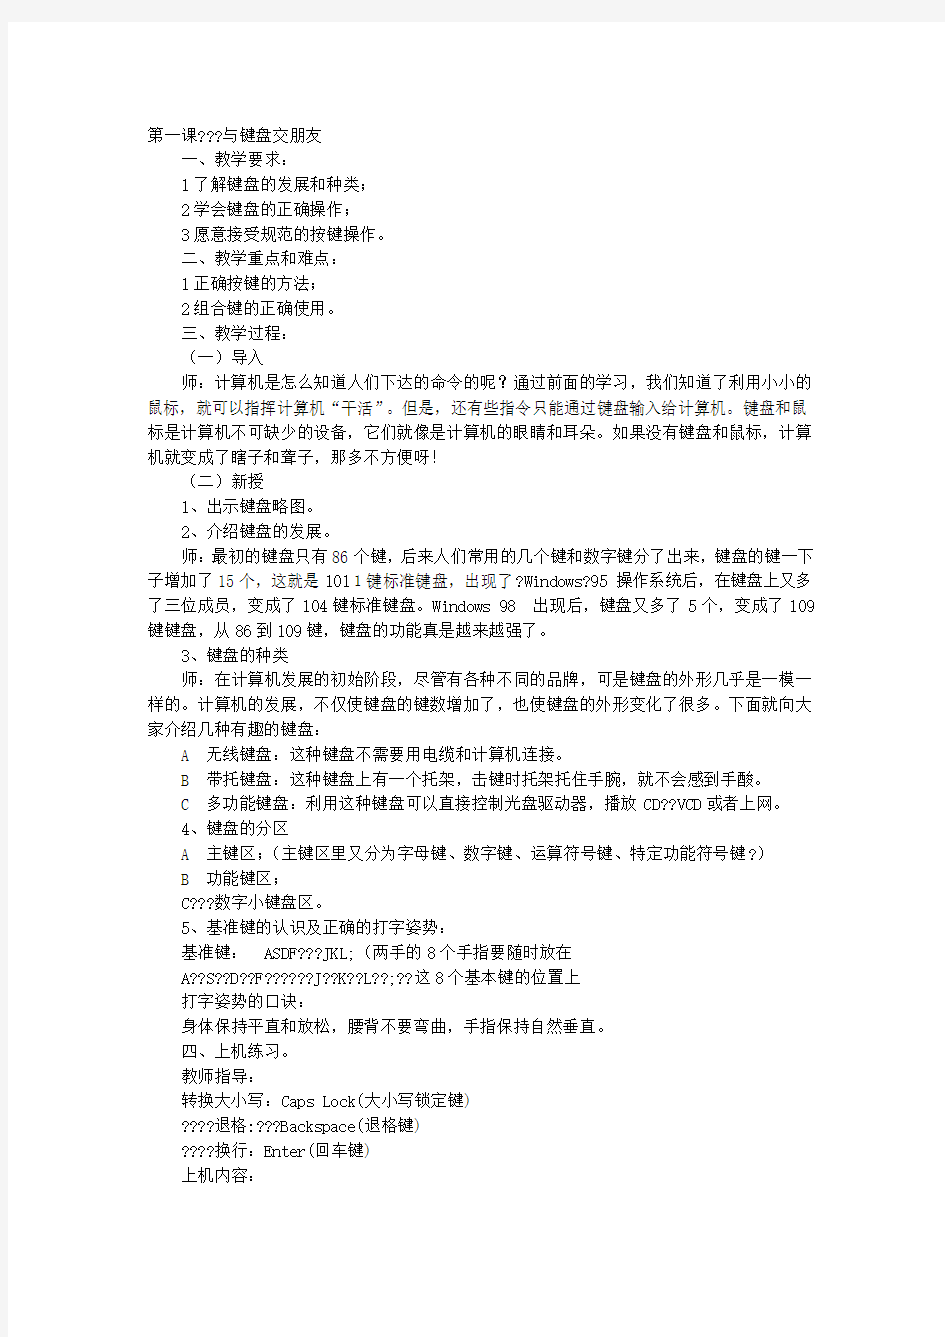 广东省小学课本《信息技术》第一册(下)教案